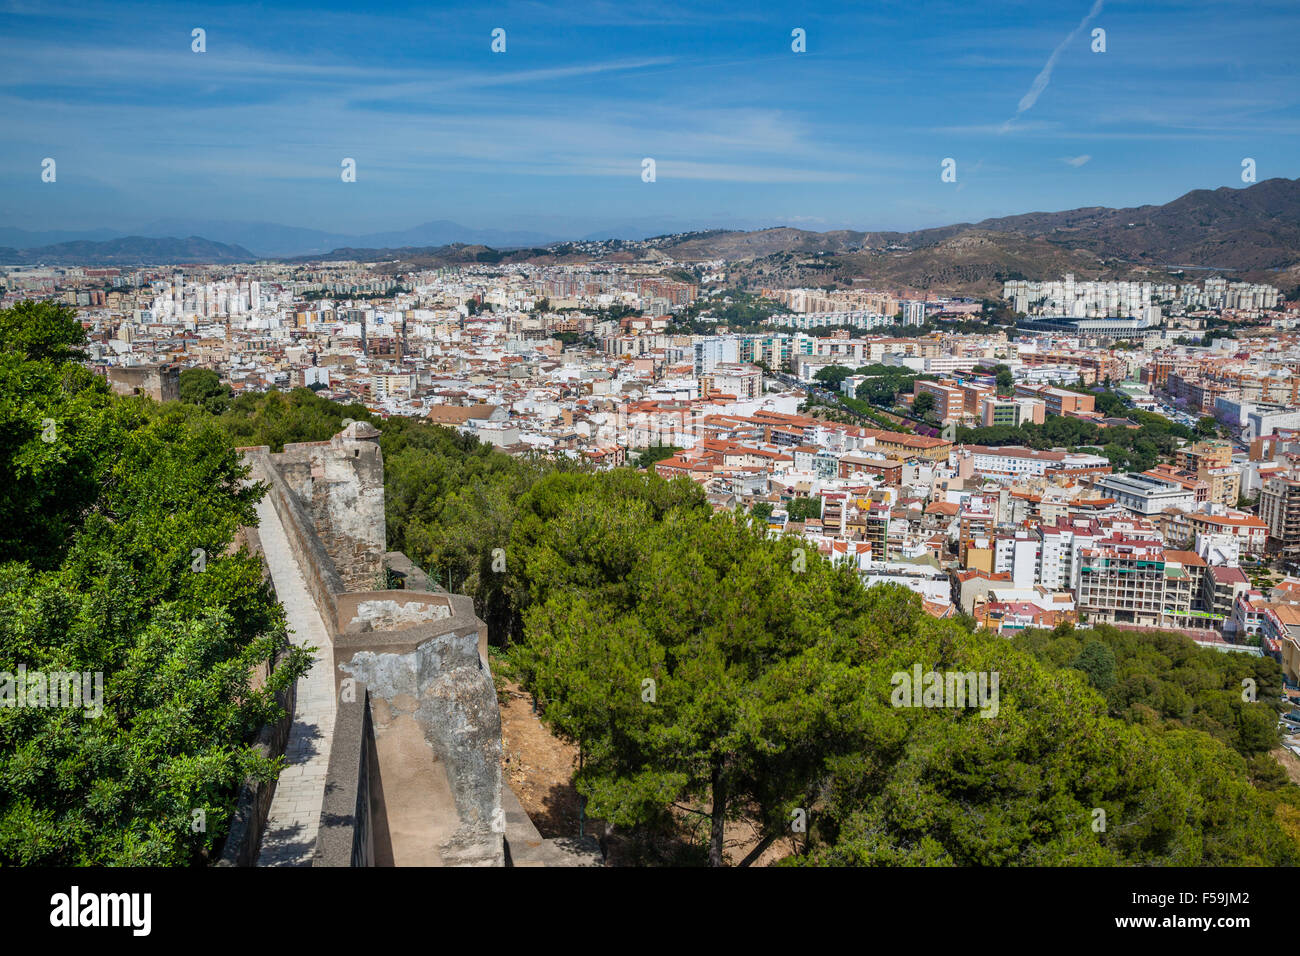 Espagne, Andalousie, province de Malaga, Malaga, vue de l'étalement urbain au nord du centre historique de Malaga Banque D'Images